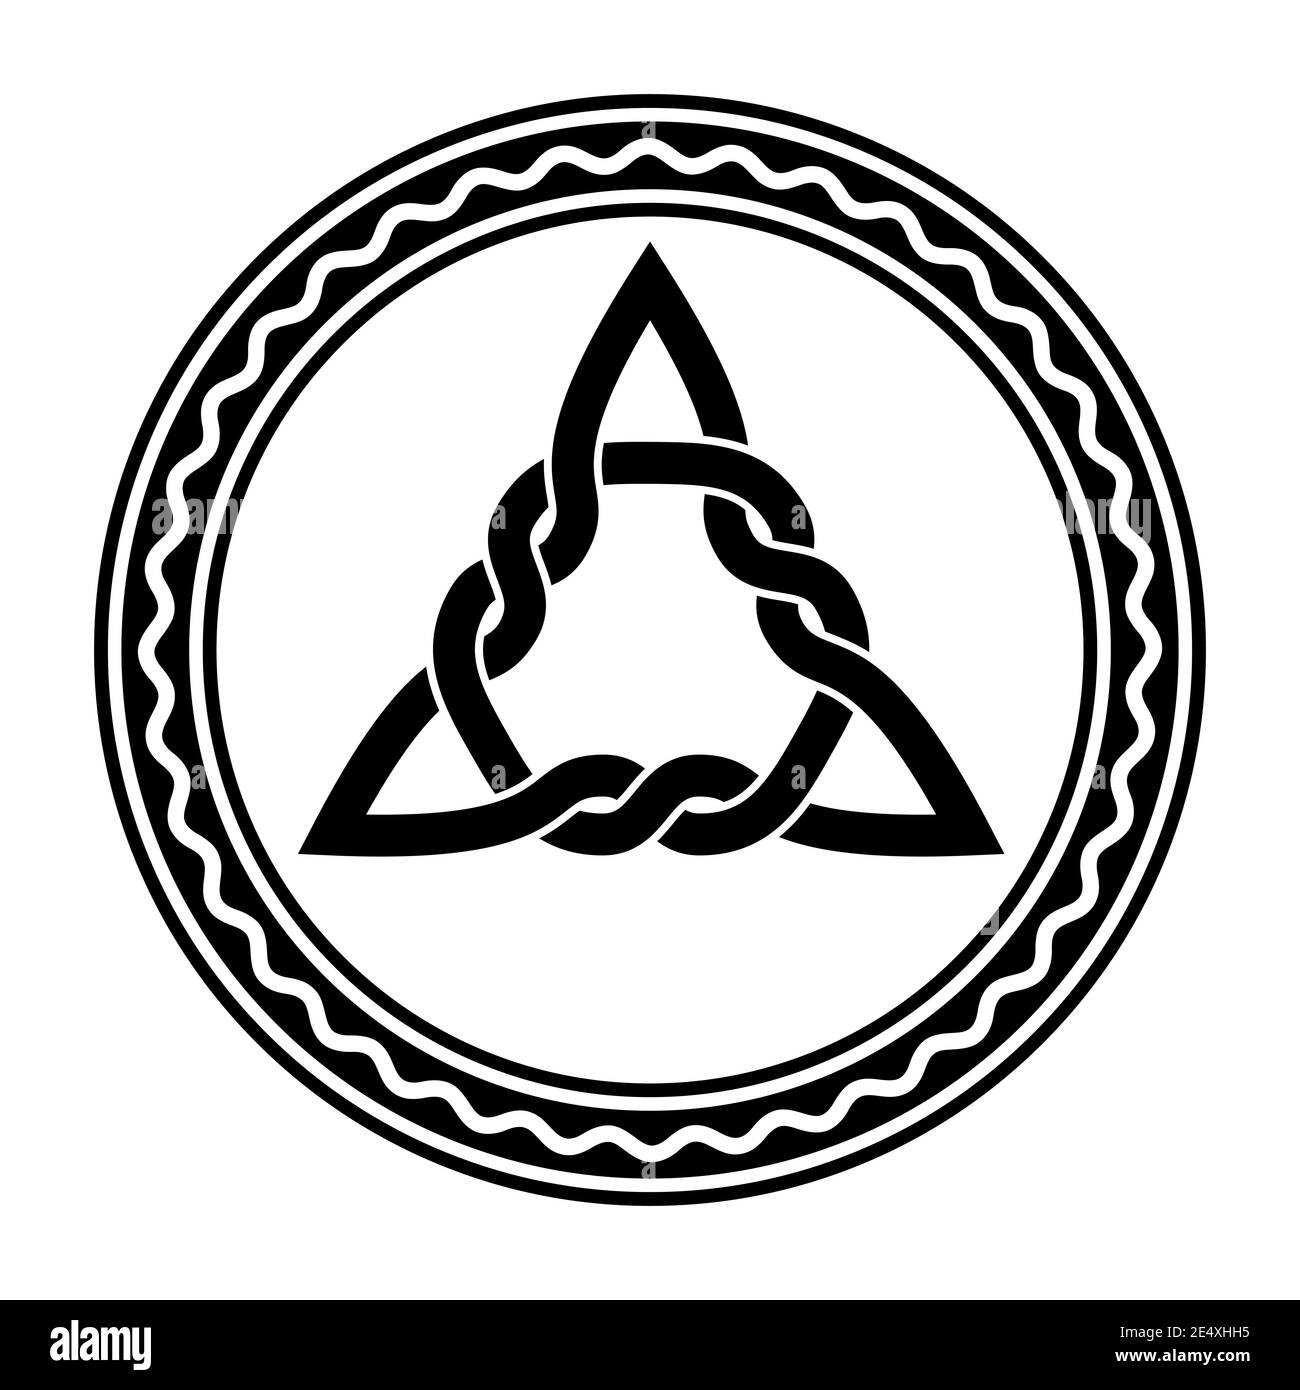 Triquetra intrecciata, un nodo celtico, in una cornice circolare con linea bianca ondulata. Figura triangolare, utilizzata nell'antica ornazione cristiana. Foto Stock